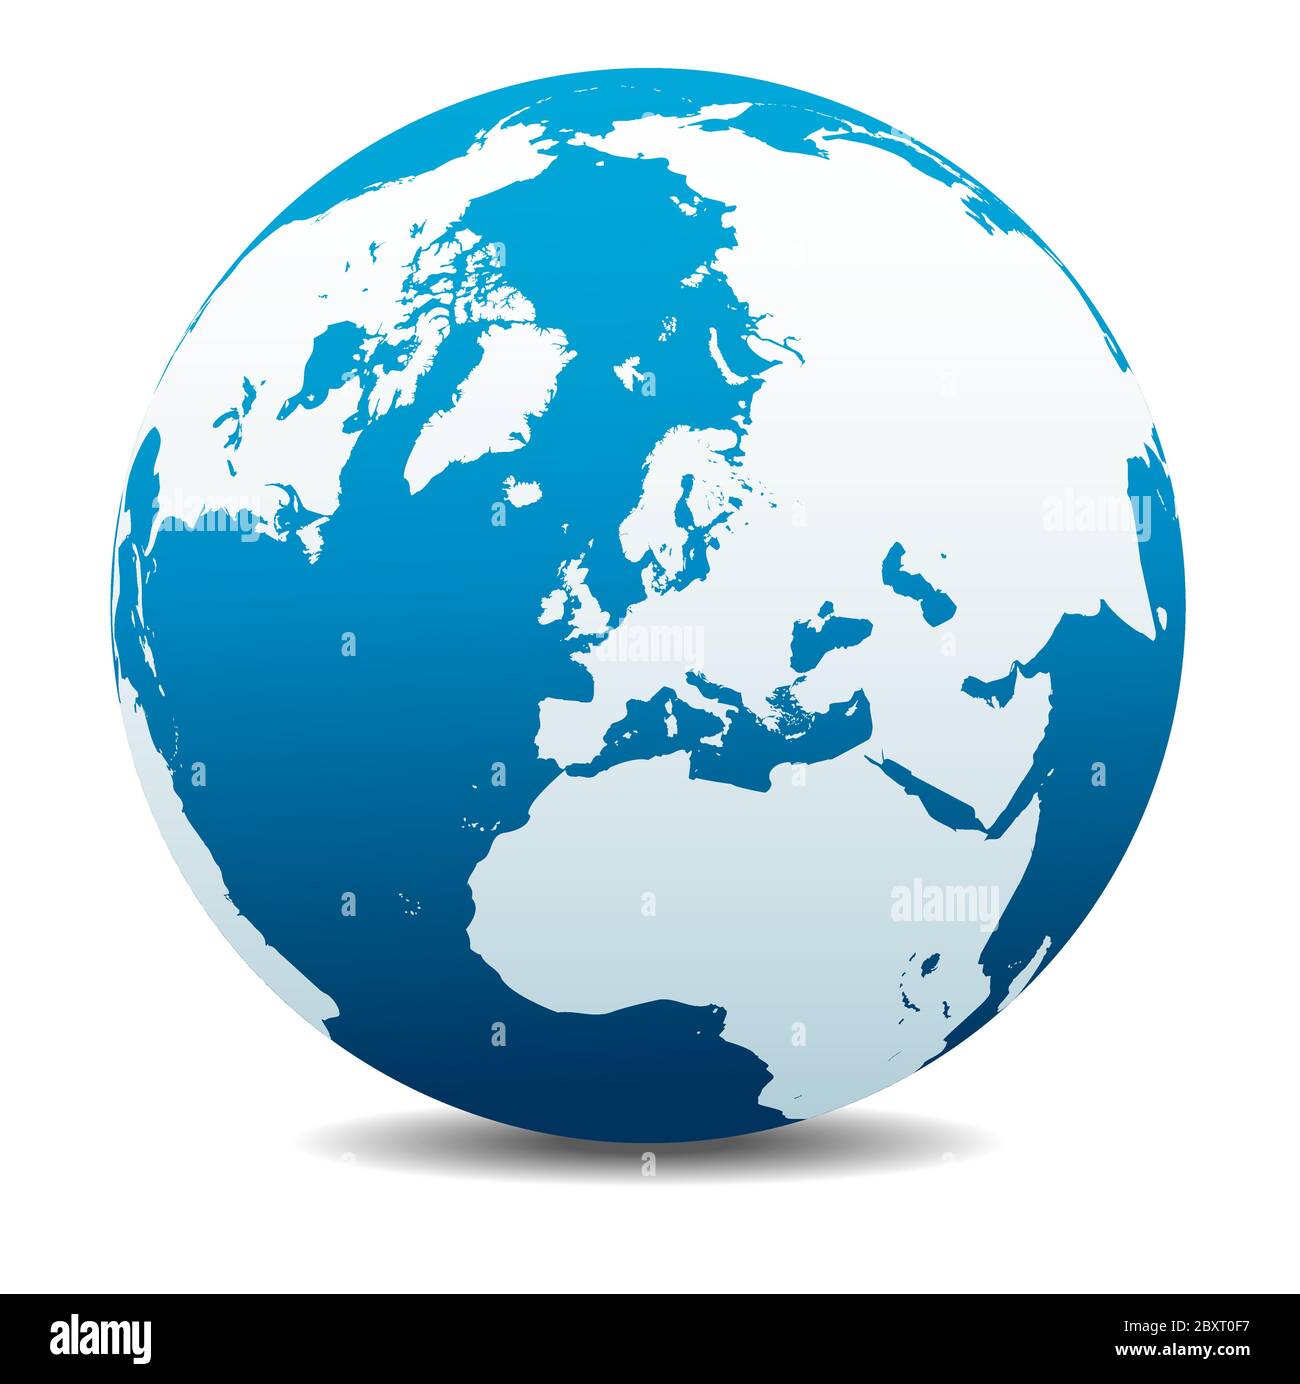 Europe du pôle Nord Haut du monde, icône carte vectorielle du globe terrestre, Terre. Tous les éléments se trouvent sur des calques individuels dans le fichier vectoriel. Illustration de Vecteur